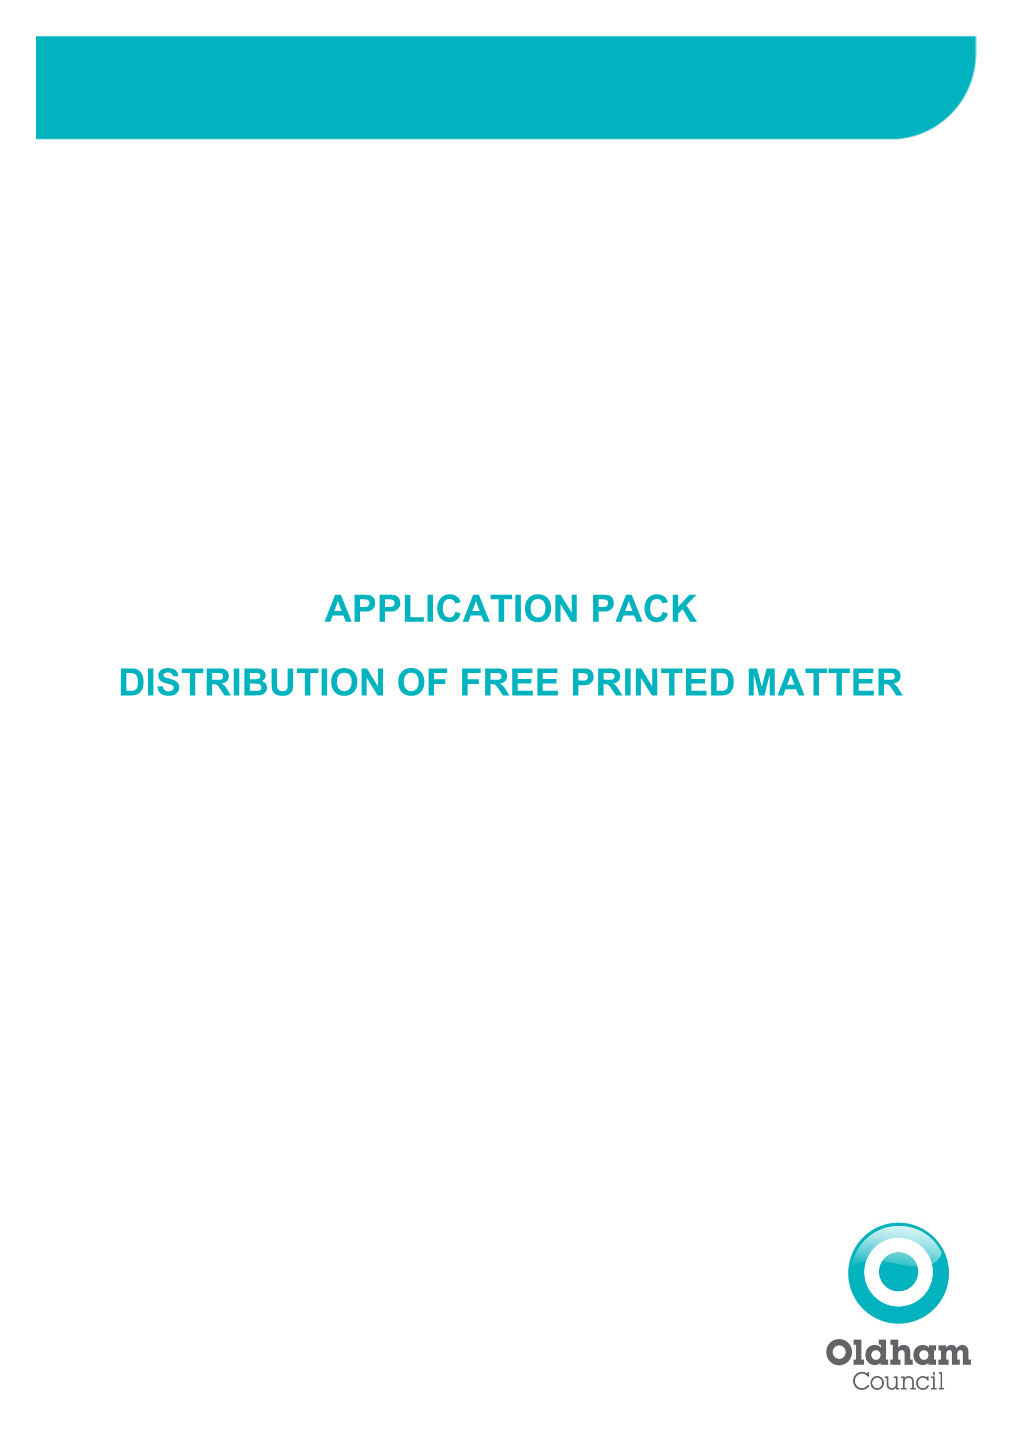 Distribution of Free Printed Matter